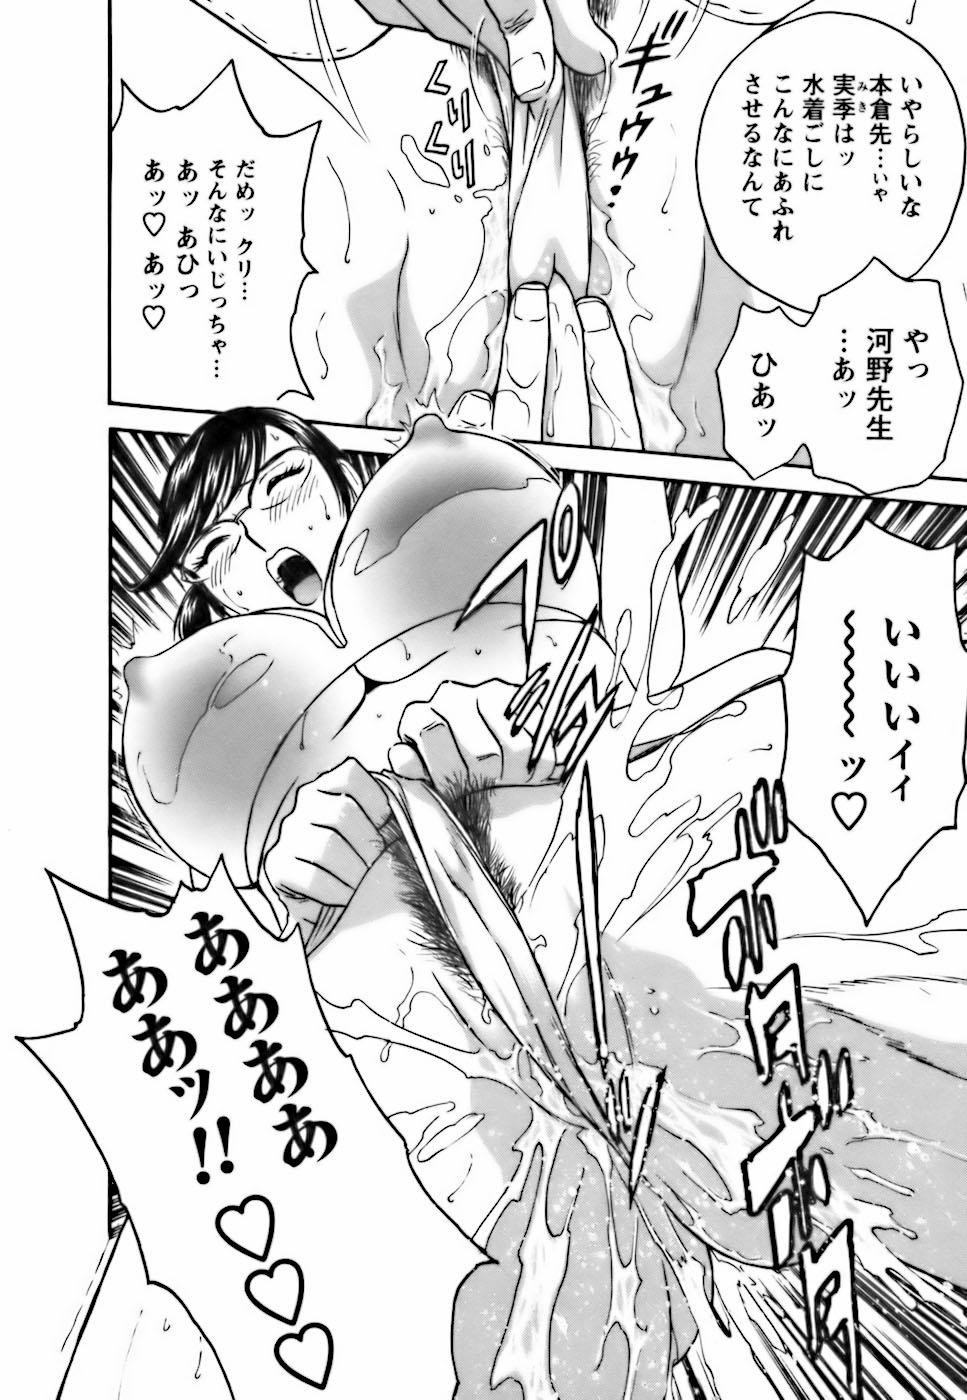 [Hidemaru] Mo-Retsu! Boin Sensei (Boing Boing Teacher) Vol.3 59